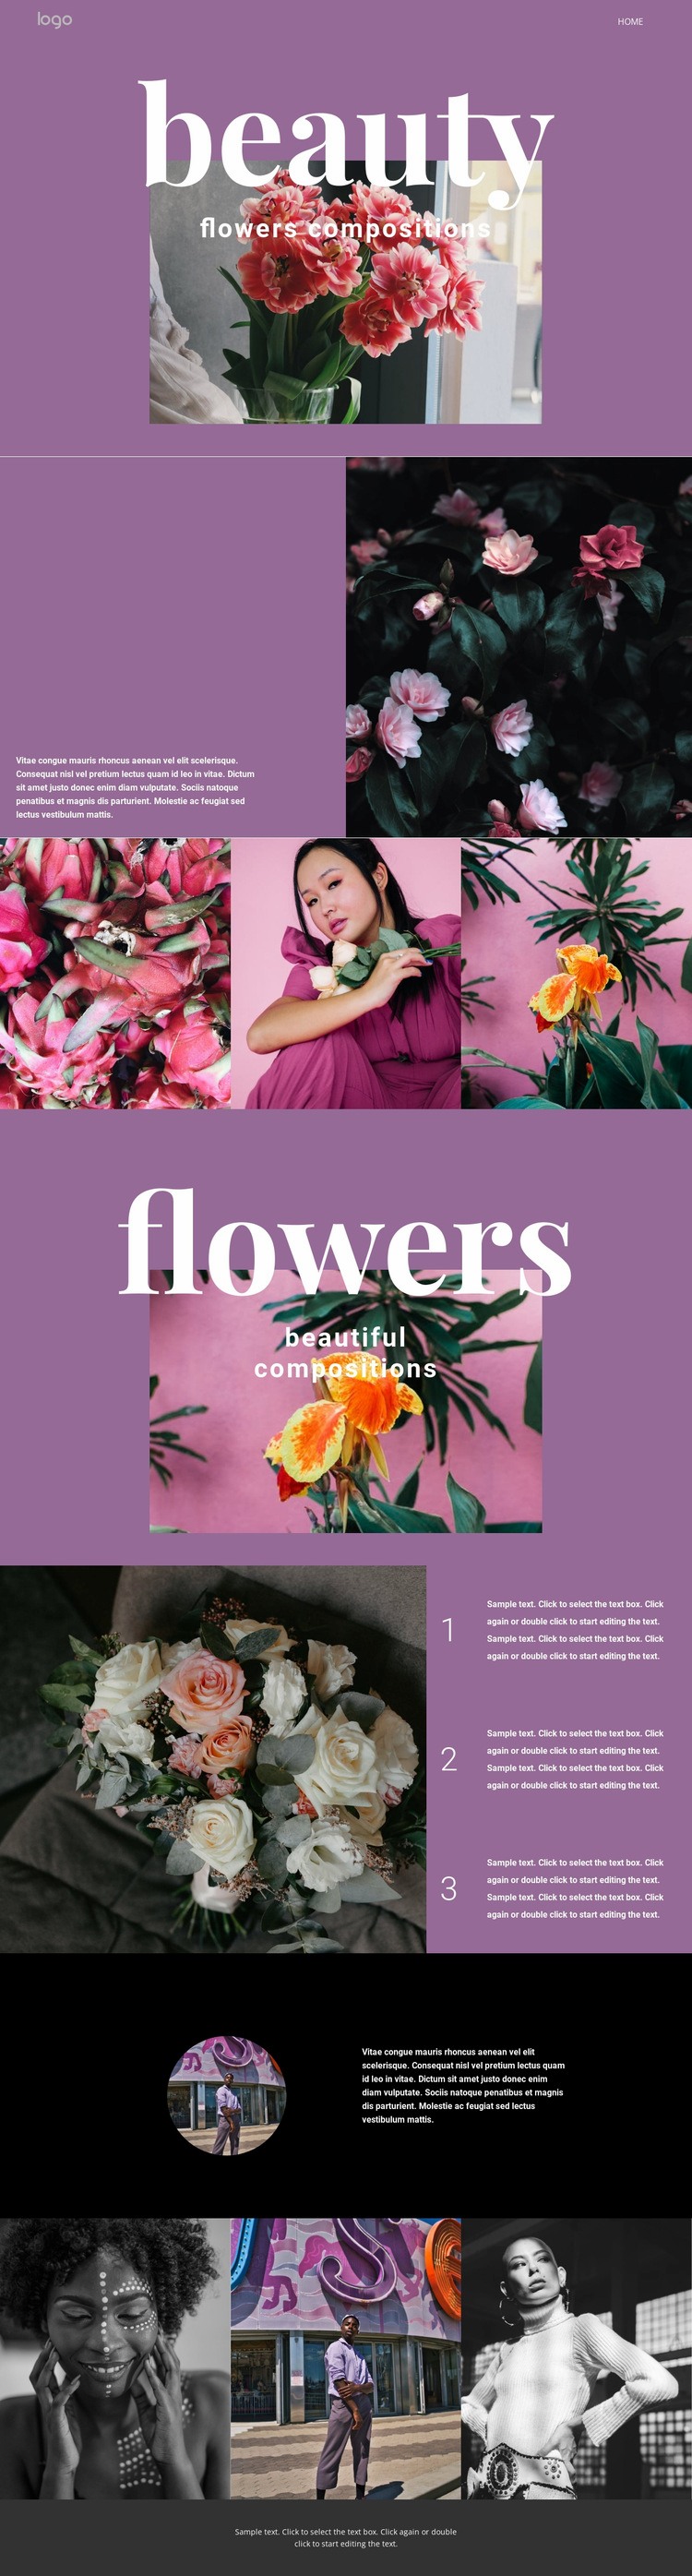 Flower salon Web Page Design